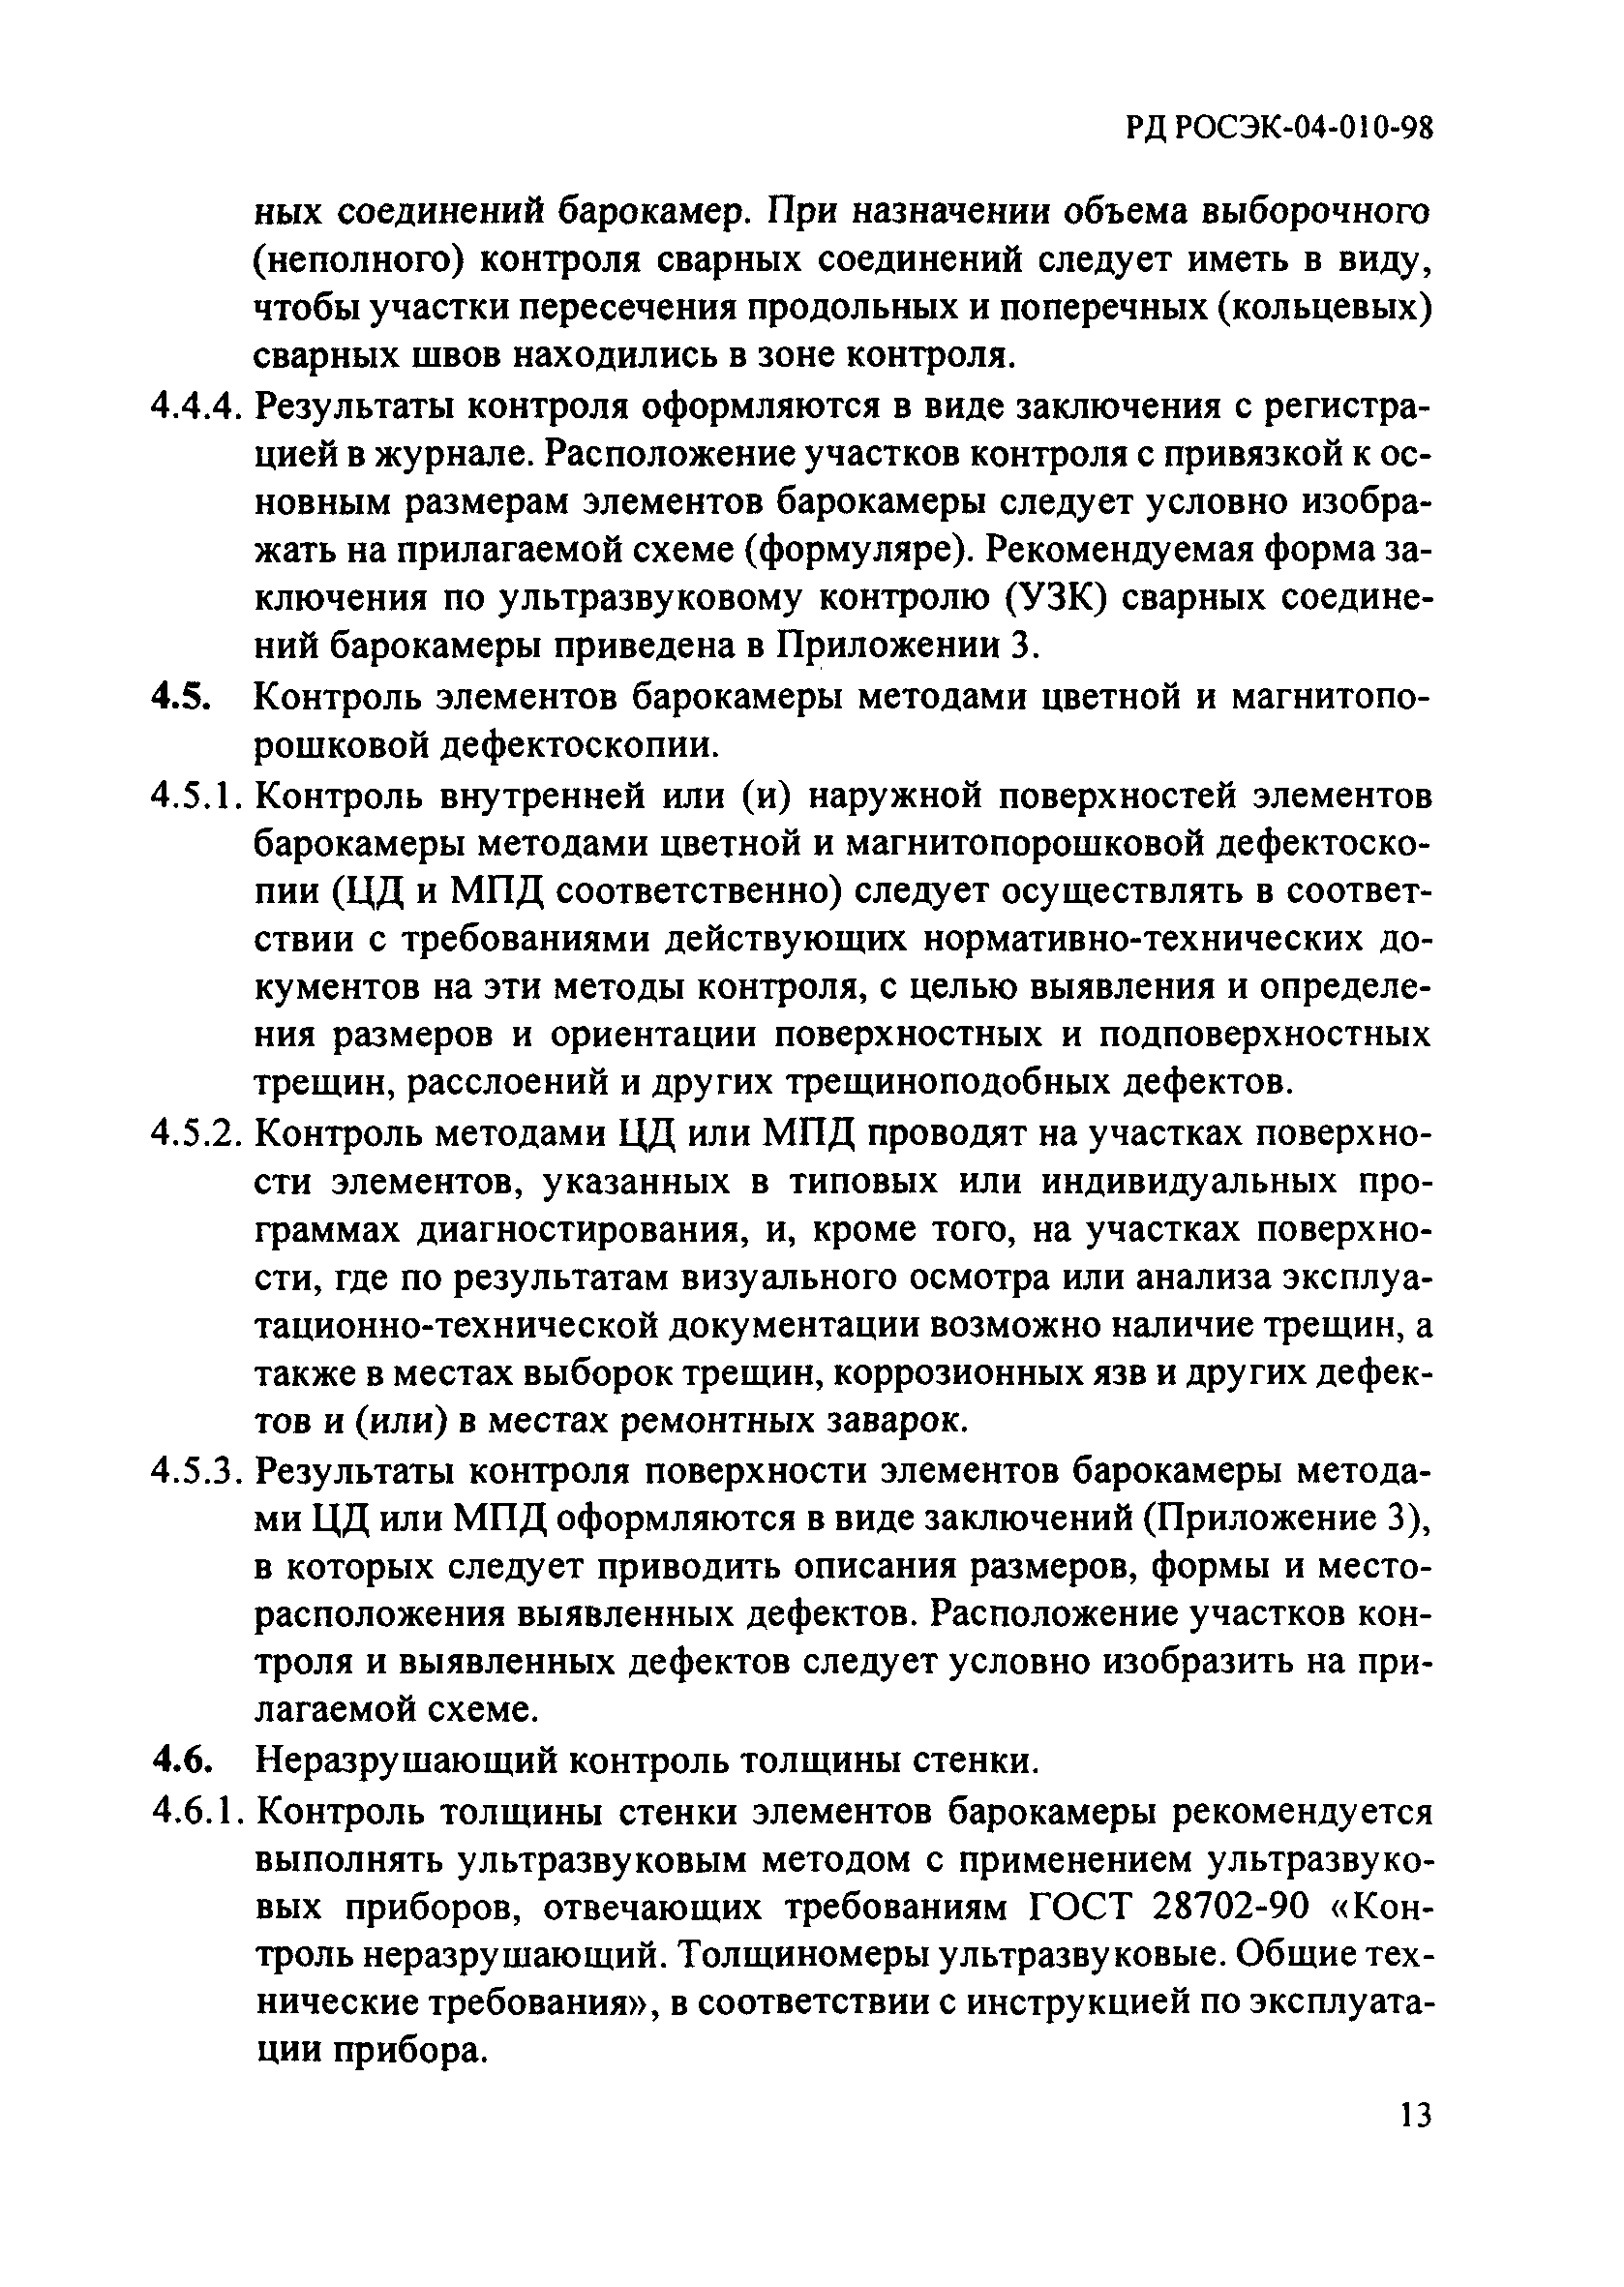 РД РОСЭК 04-010-98